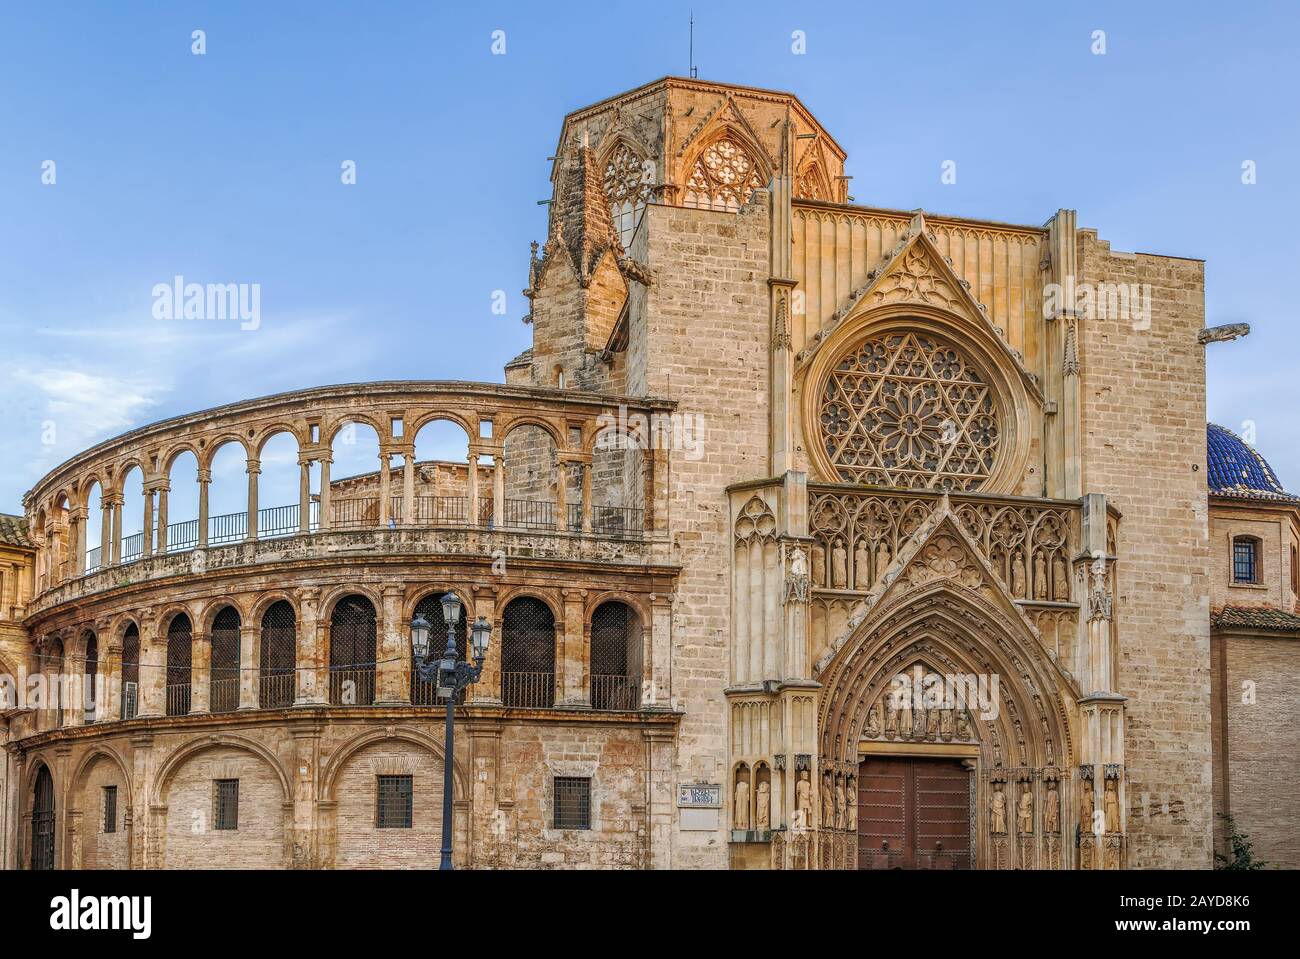 La cathédrale de Valence, Espagne Banque D'Images